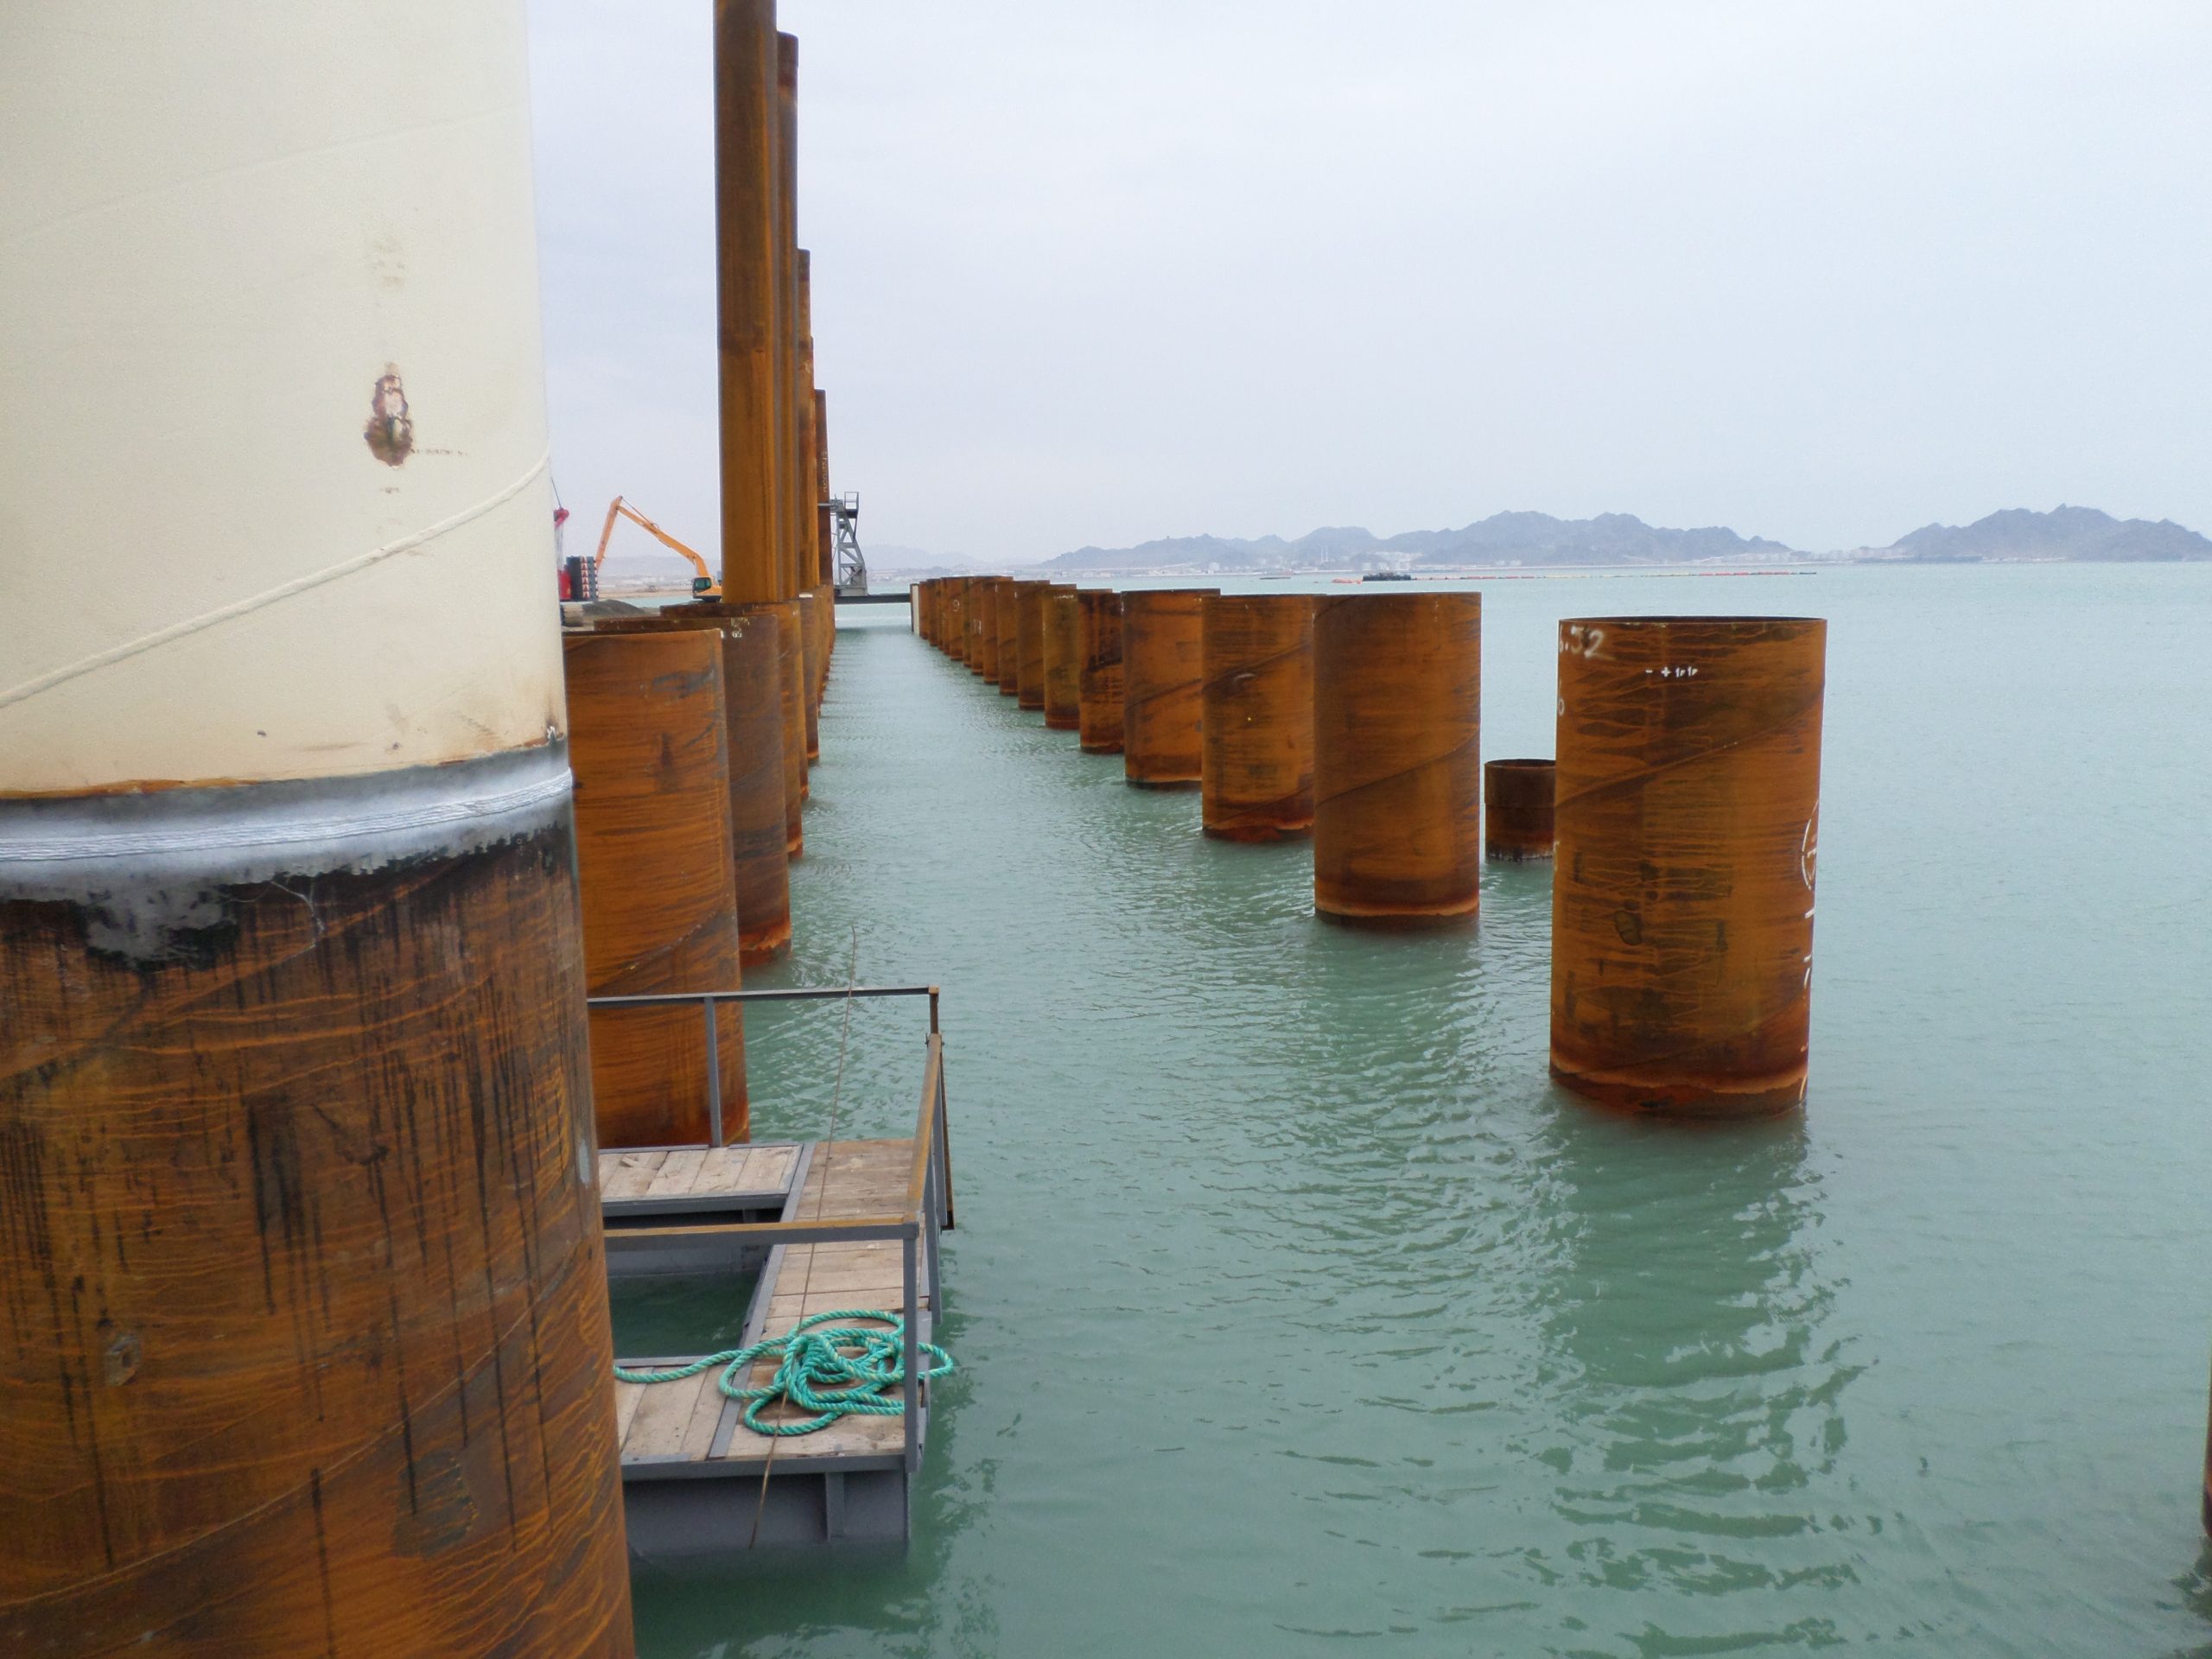 Uluslararası Türkmenbaşı Liman Projesi – Kazık Borusu Montaj, Kaynak ve Boya İşleri